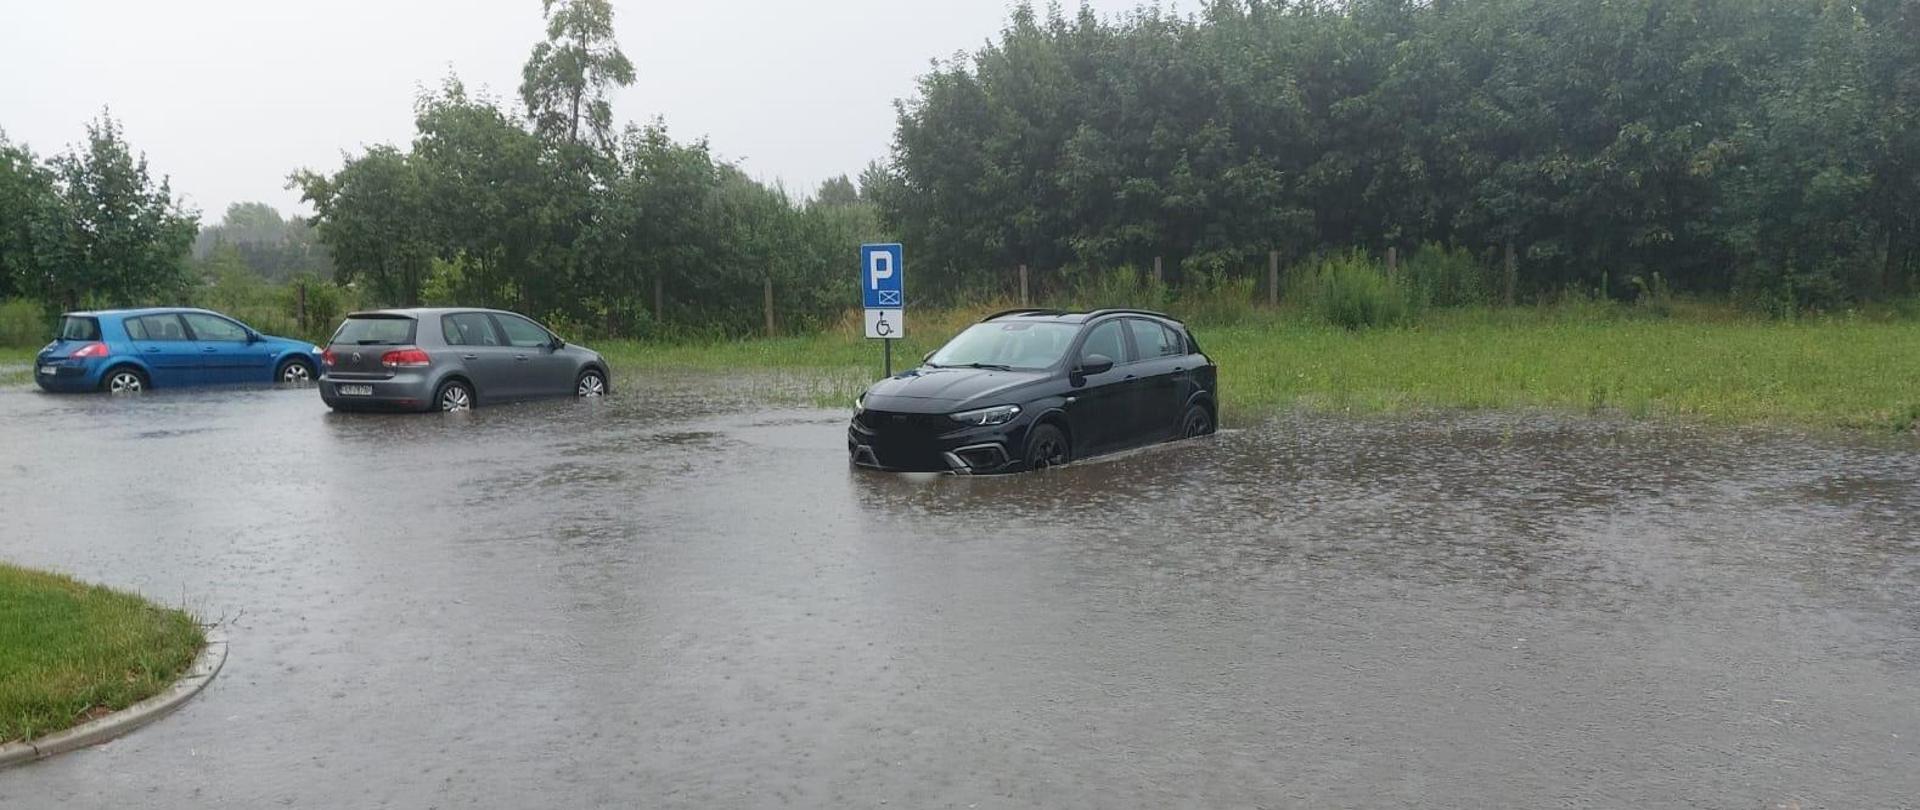 Zdjęcie przedstawia trzy samochody osobowe stojące na parkingu, które zostały podtopione przez opady deszczu.